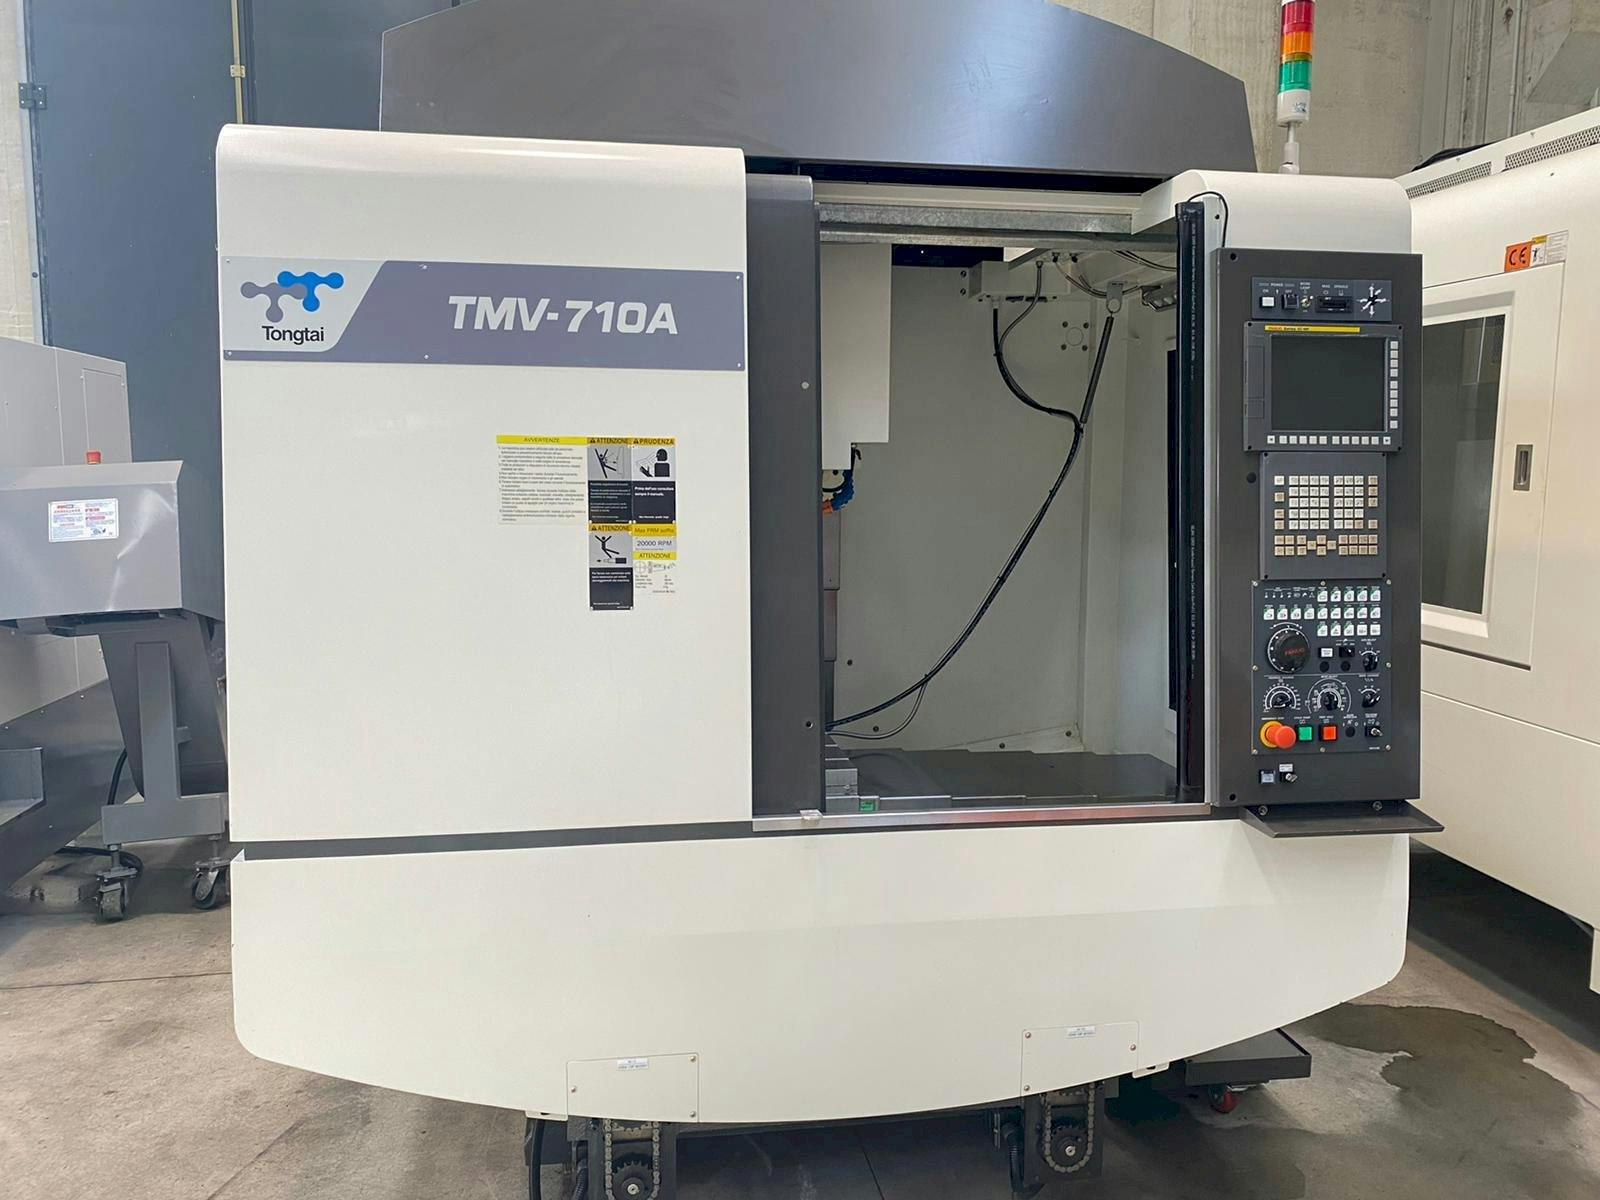 Prikaz  stroja Tongtai TMV-710A  sprijeda